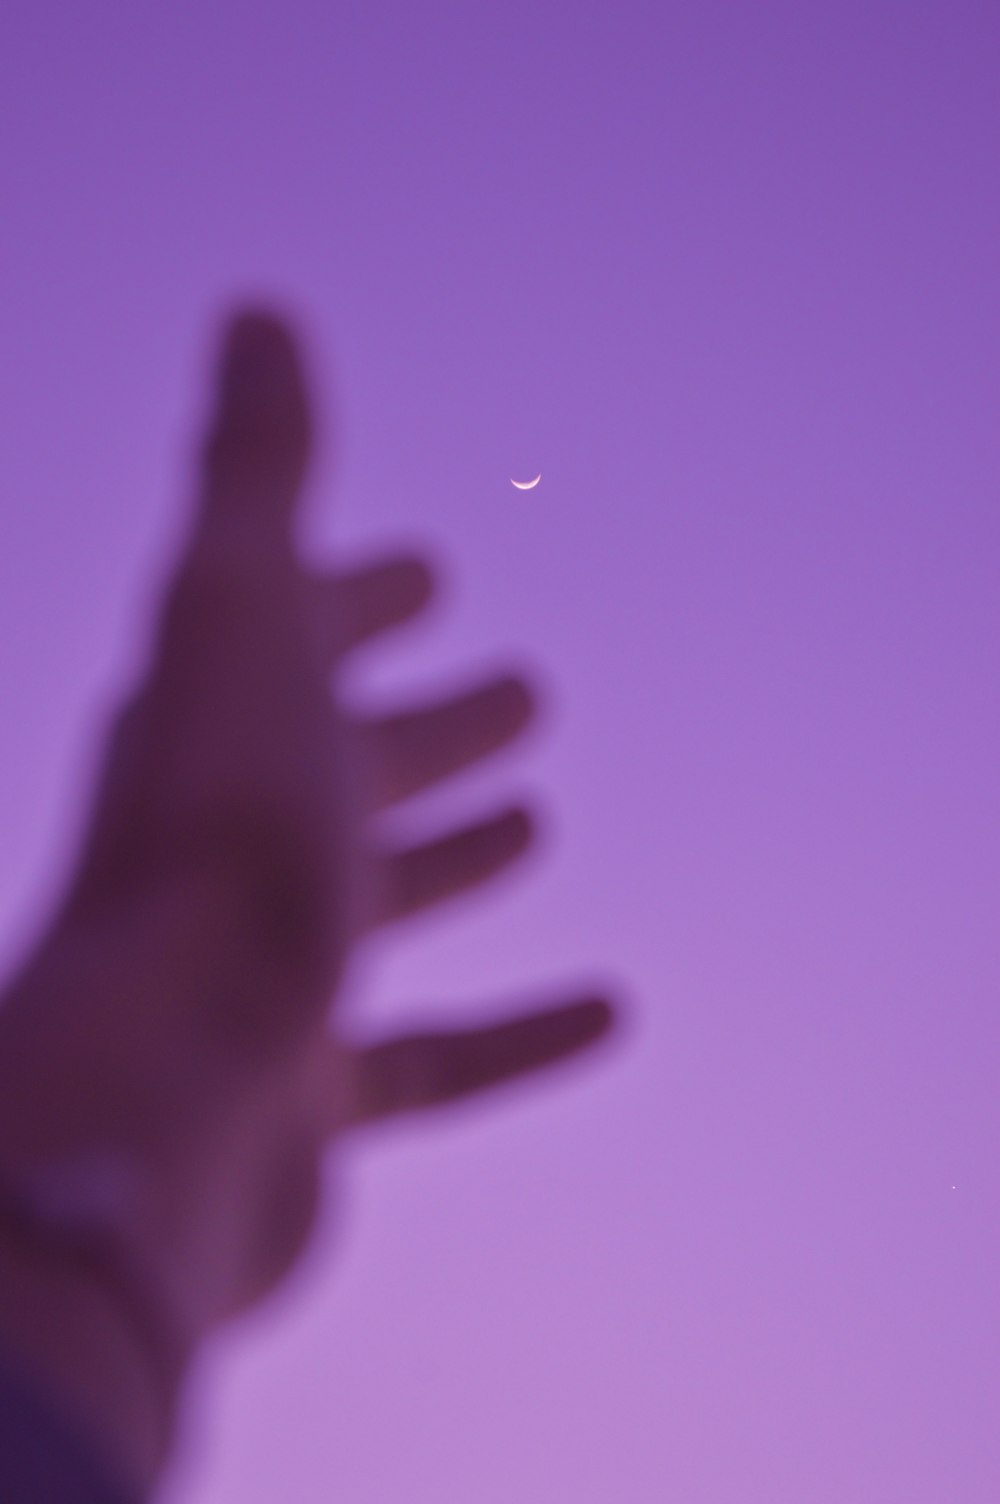 uma foto borrada da mão de uma pessoa com uma meia-lua no